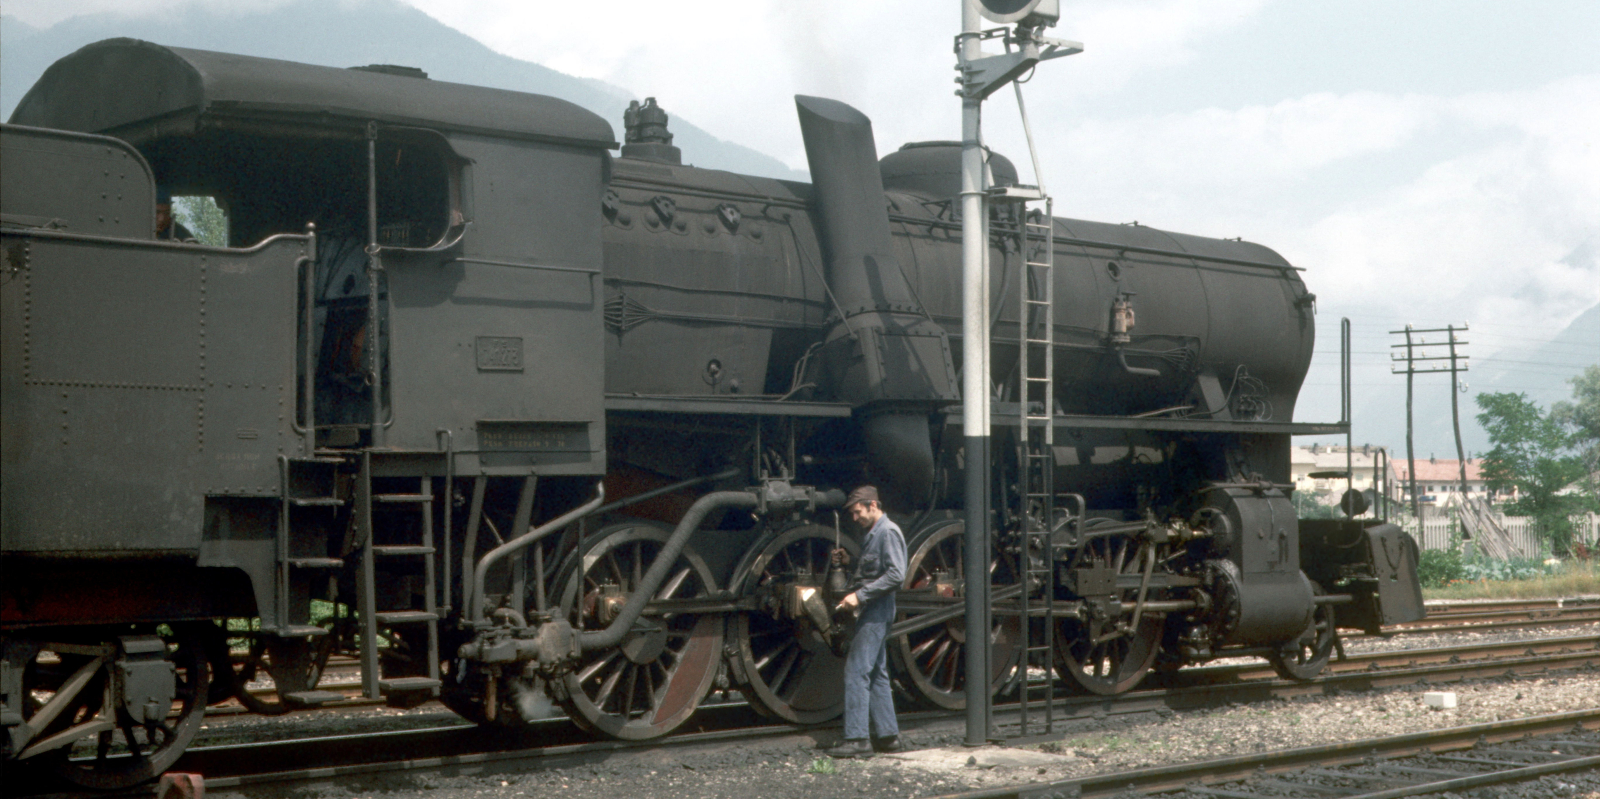 741 273 in September 1973 in Brunico